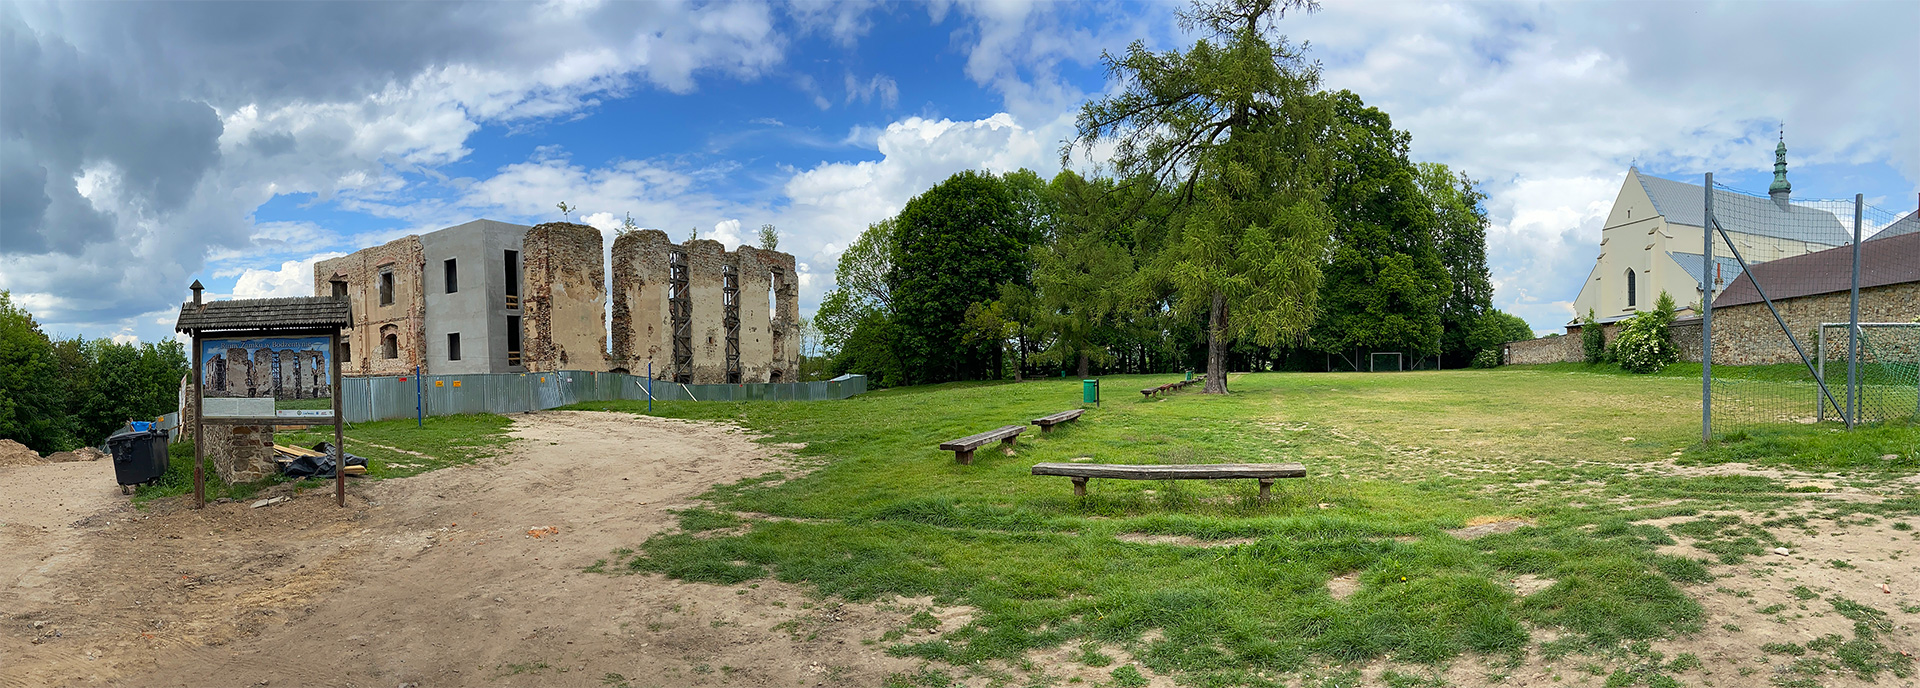 Ruiny zamku i kościół św. Ducha w Bodzentynie na panoramie (kliknij, aby powiększyć)